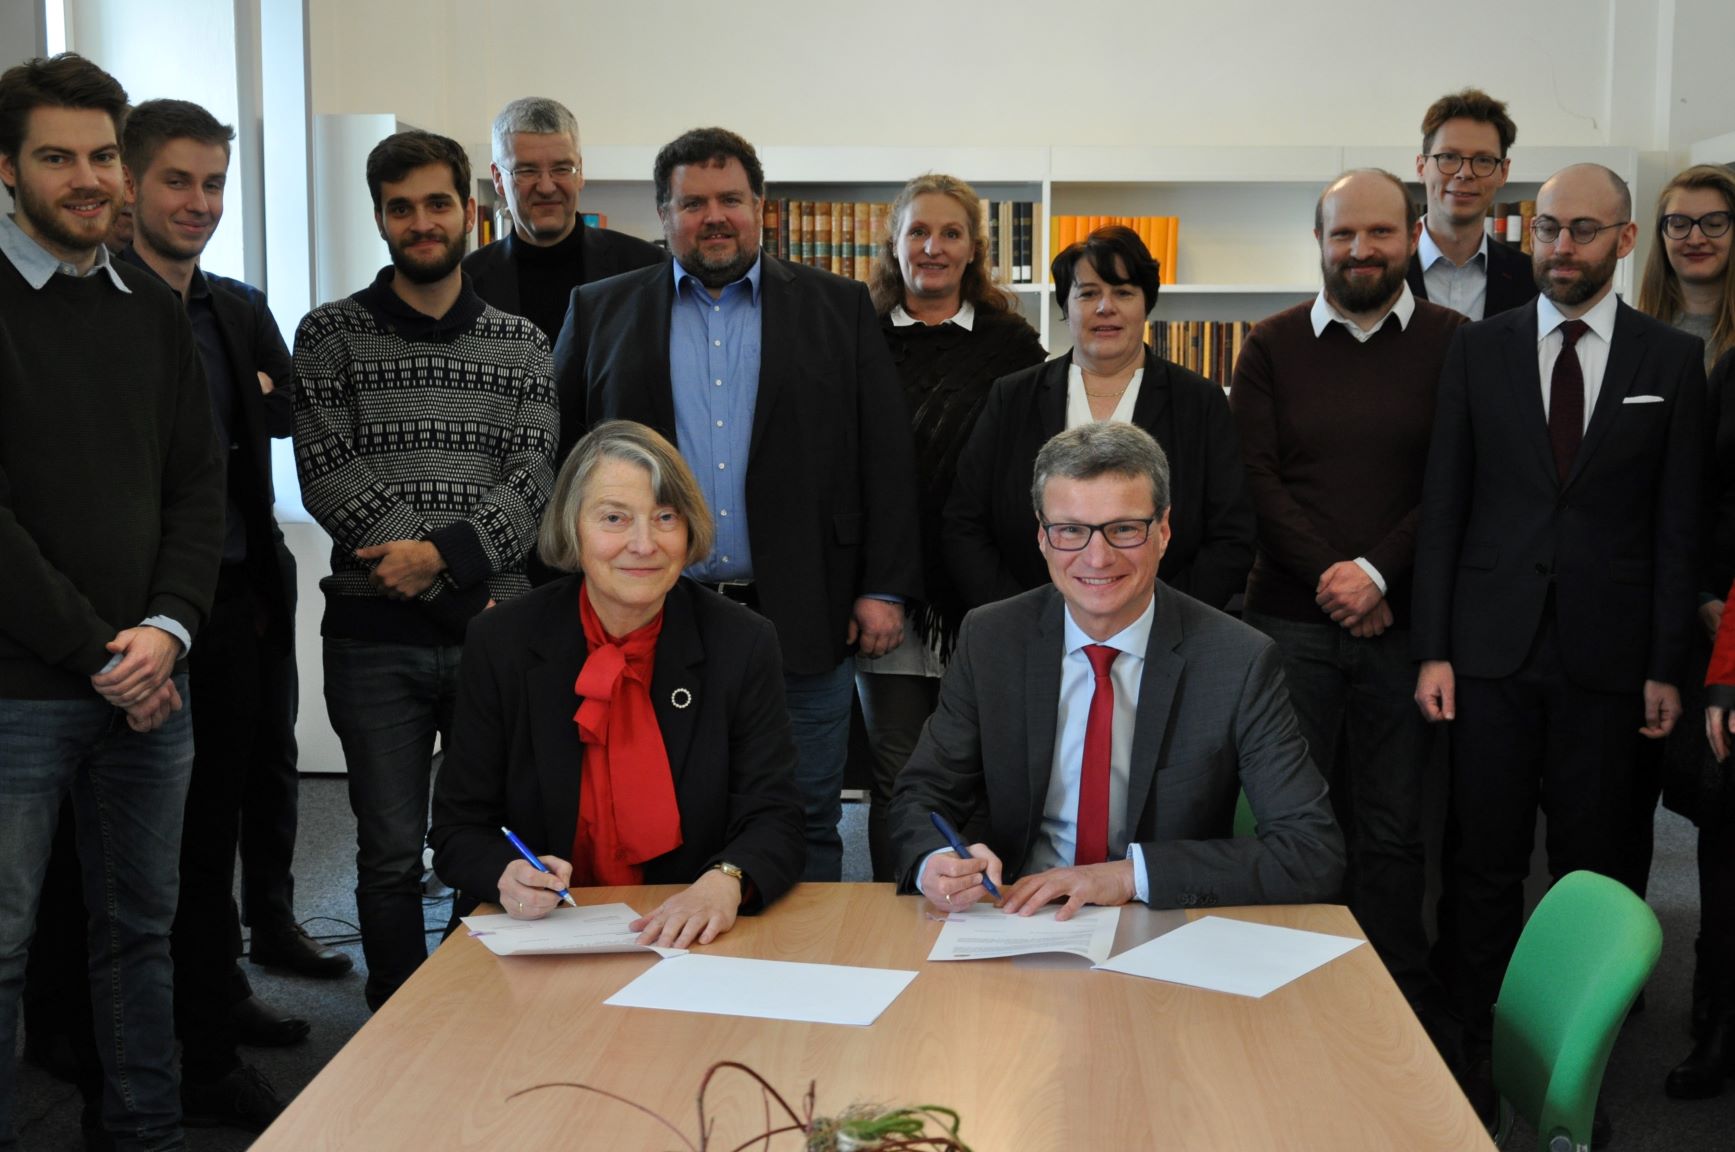 Wissenschaftsminister Bernd Sibler und MGH-Präsidentin Prof. Dr. Martina Hartmann unterzeichnen eine Zielvereinbarung, um die MGH weiter zu stärken und zukunftsorientiert aufzustellen. ©MGH